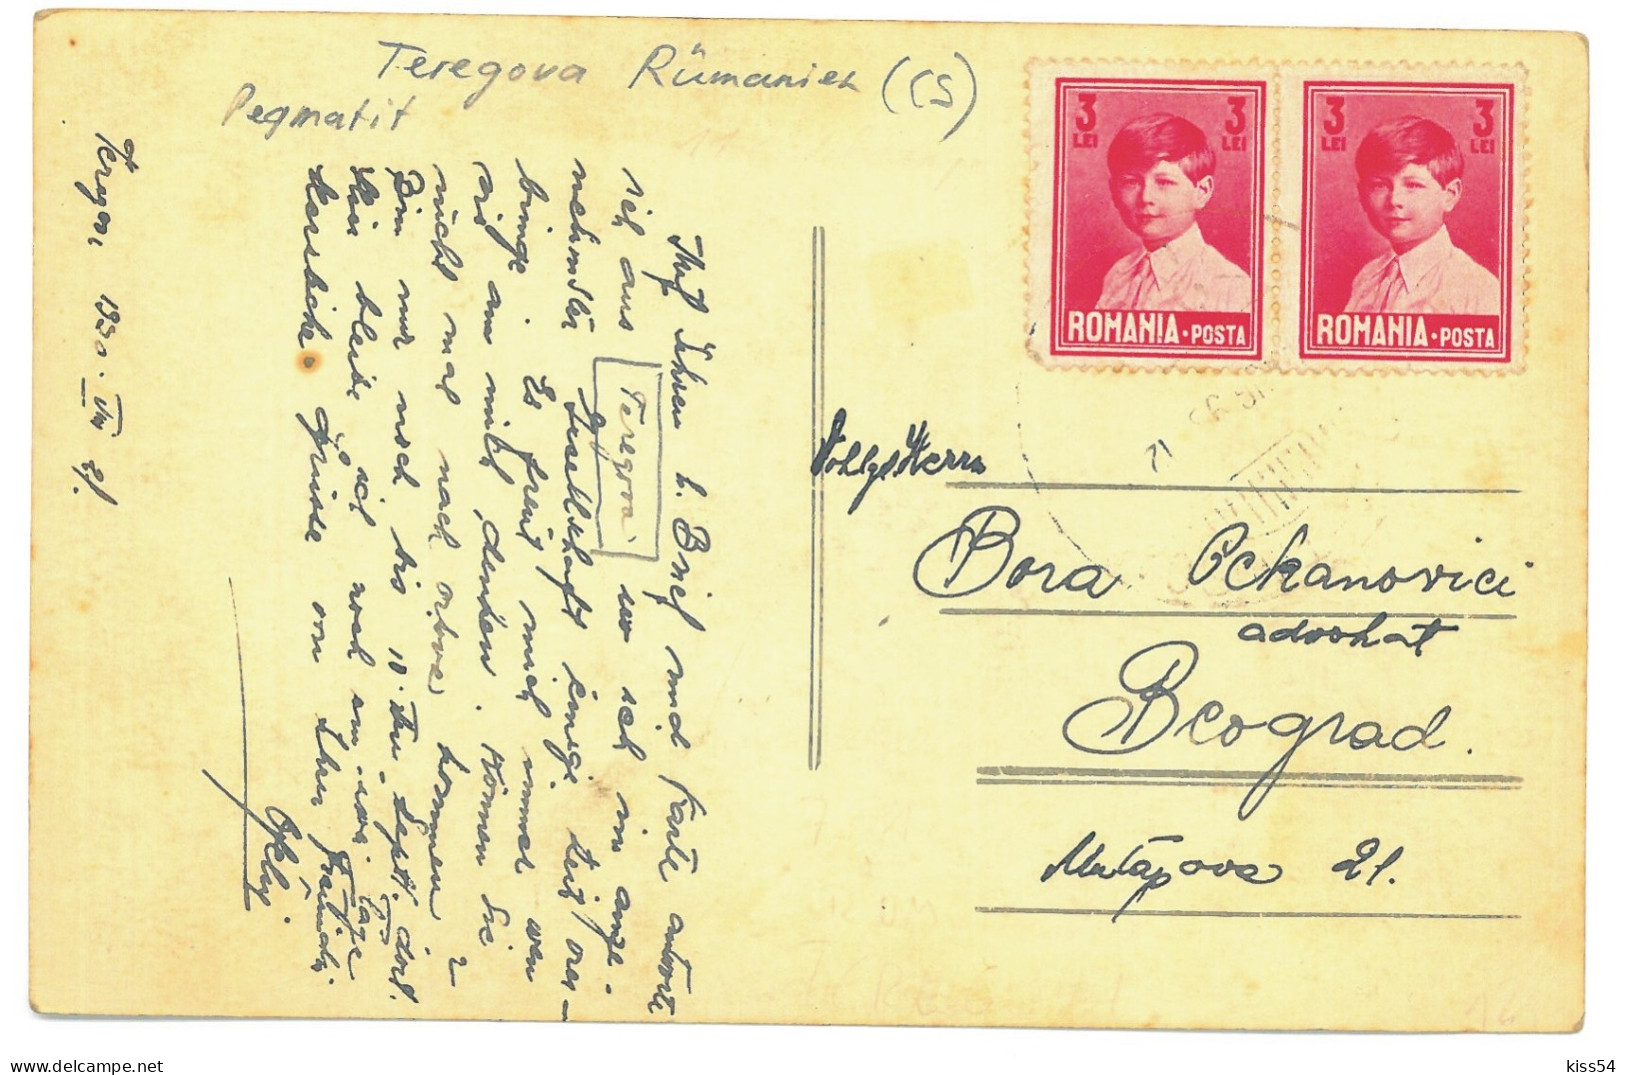 RO 38 - 25019 TEREGOVA, Caras-Severin, Mine Feldspat, Romania - Old Postcard, Real Photo - Used - 1930 - Roemenië